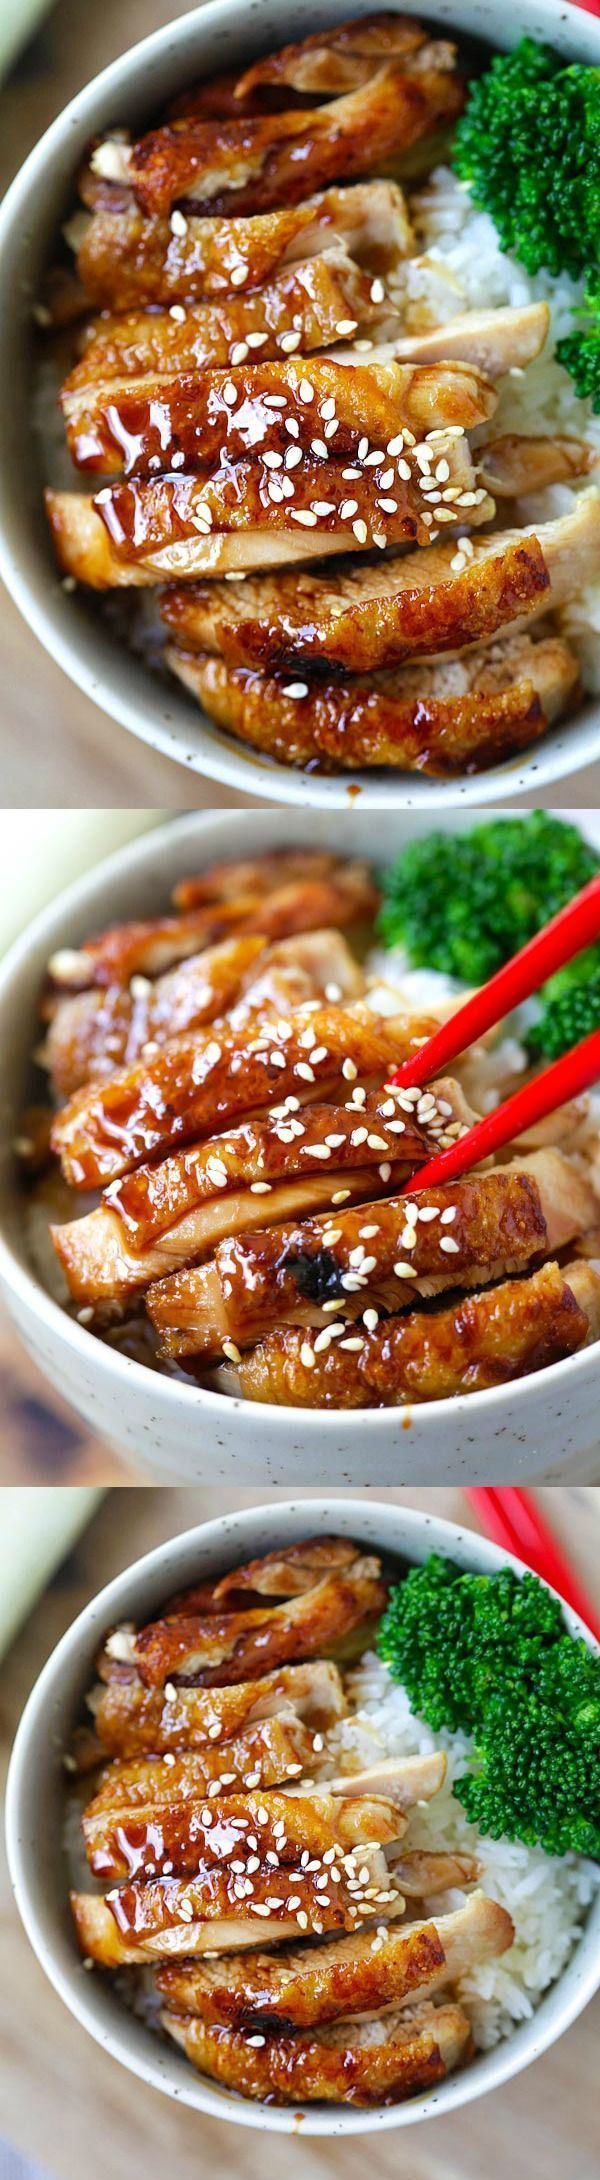 How to make chicken teriyaki – EASY recipe for teriyaki sauce plus chicken teriyaki that tastes like Japanese restaurants |